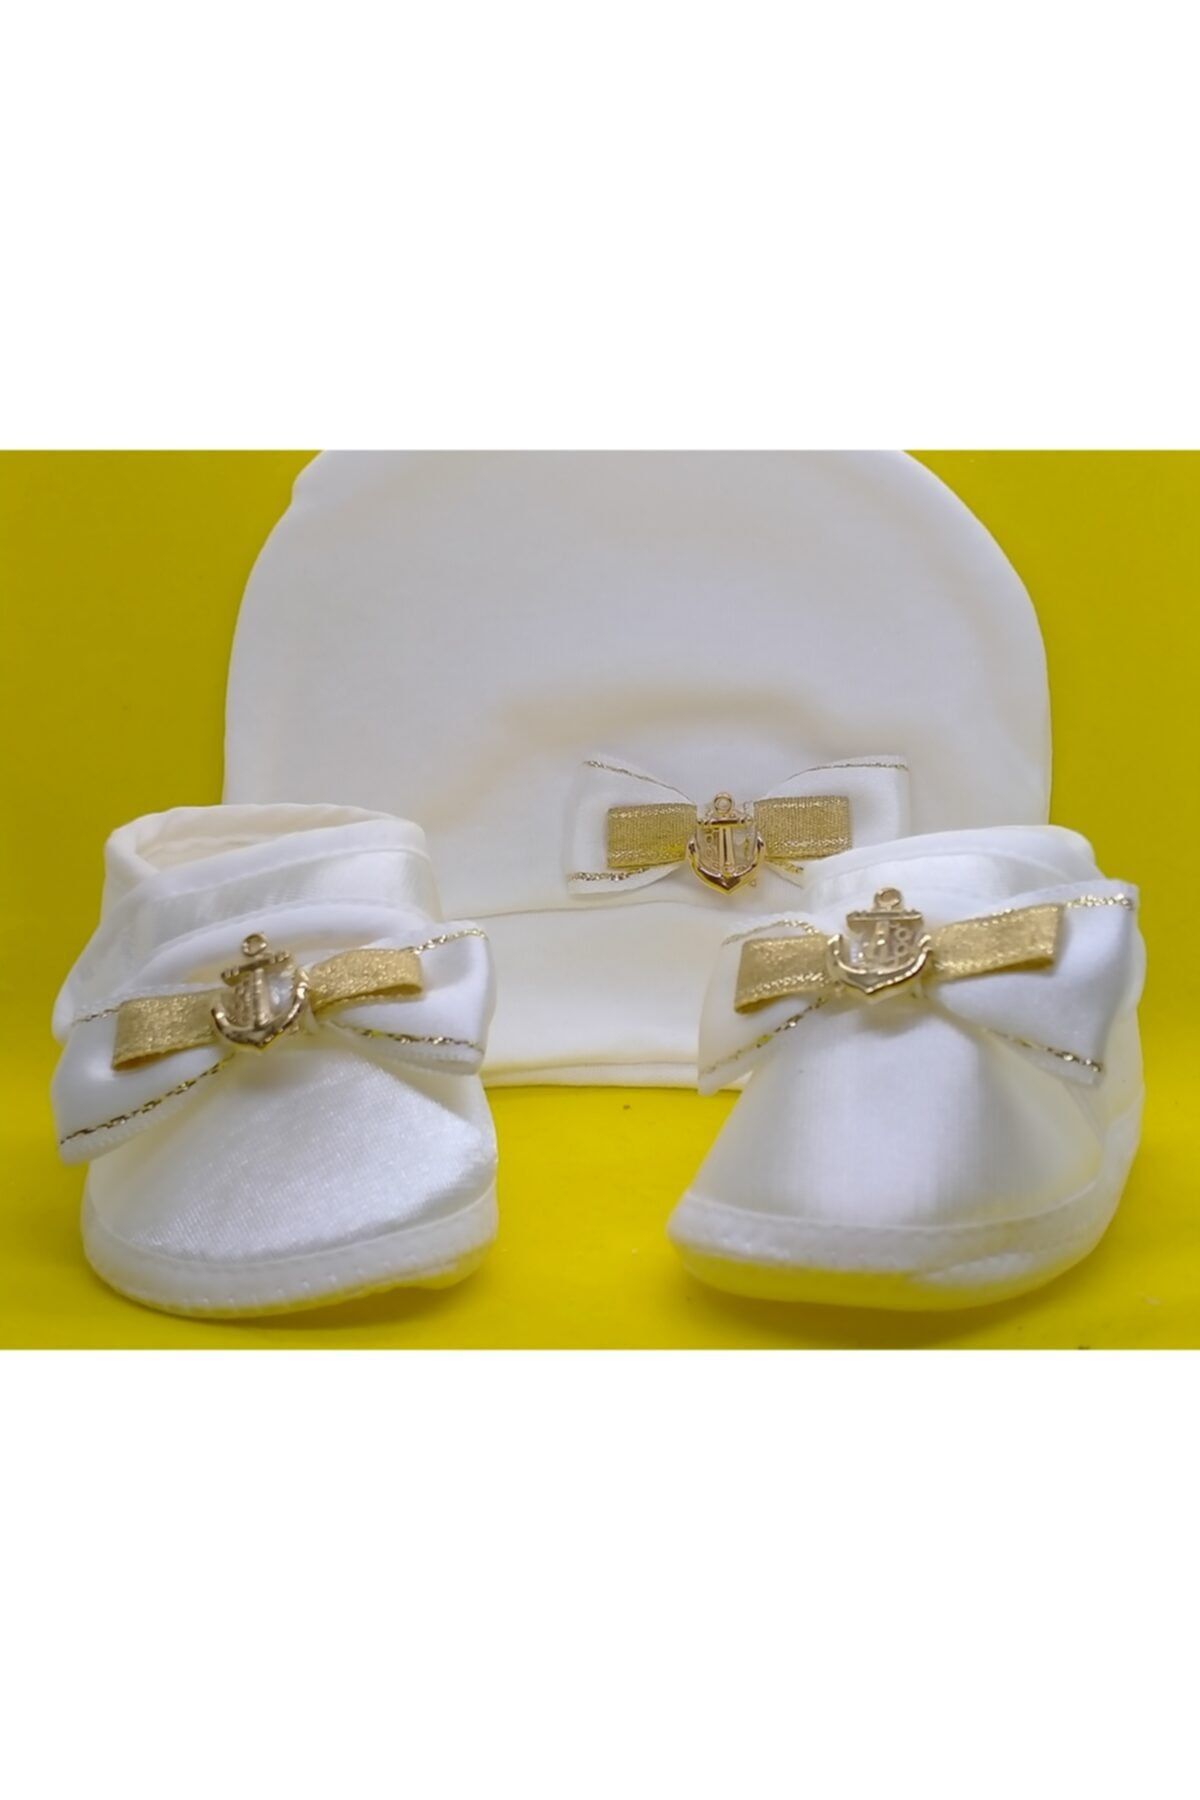 BUKAWEAR Erkek Bebek Ekru Yeni Doğan Ayakkabı Şapka 2'li Set Takım